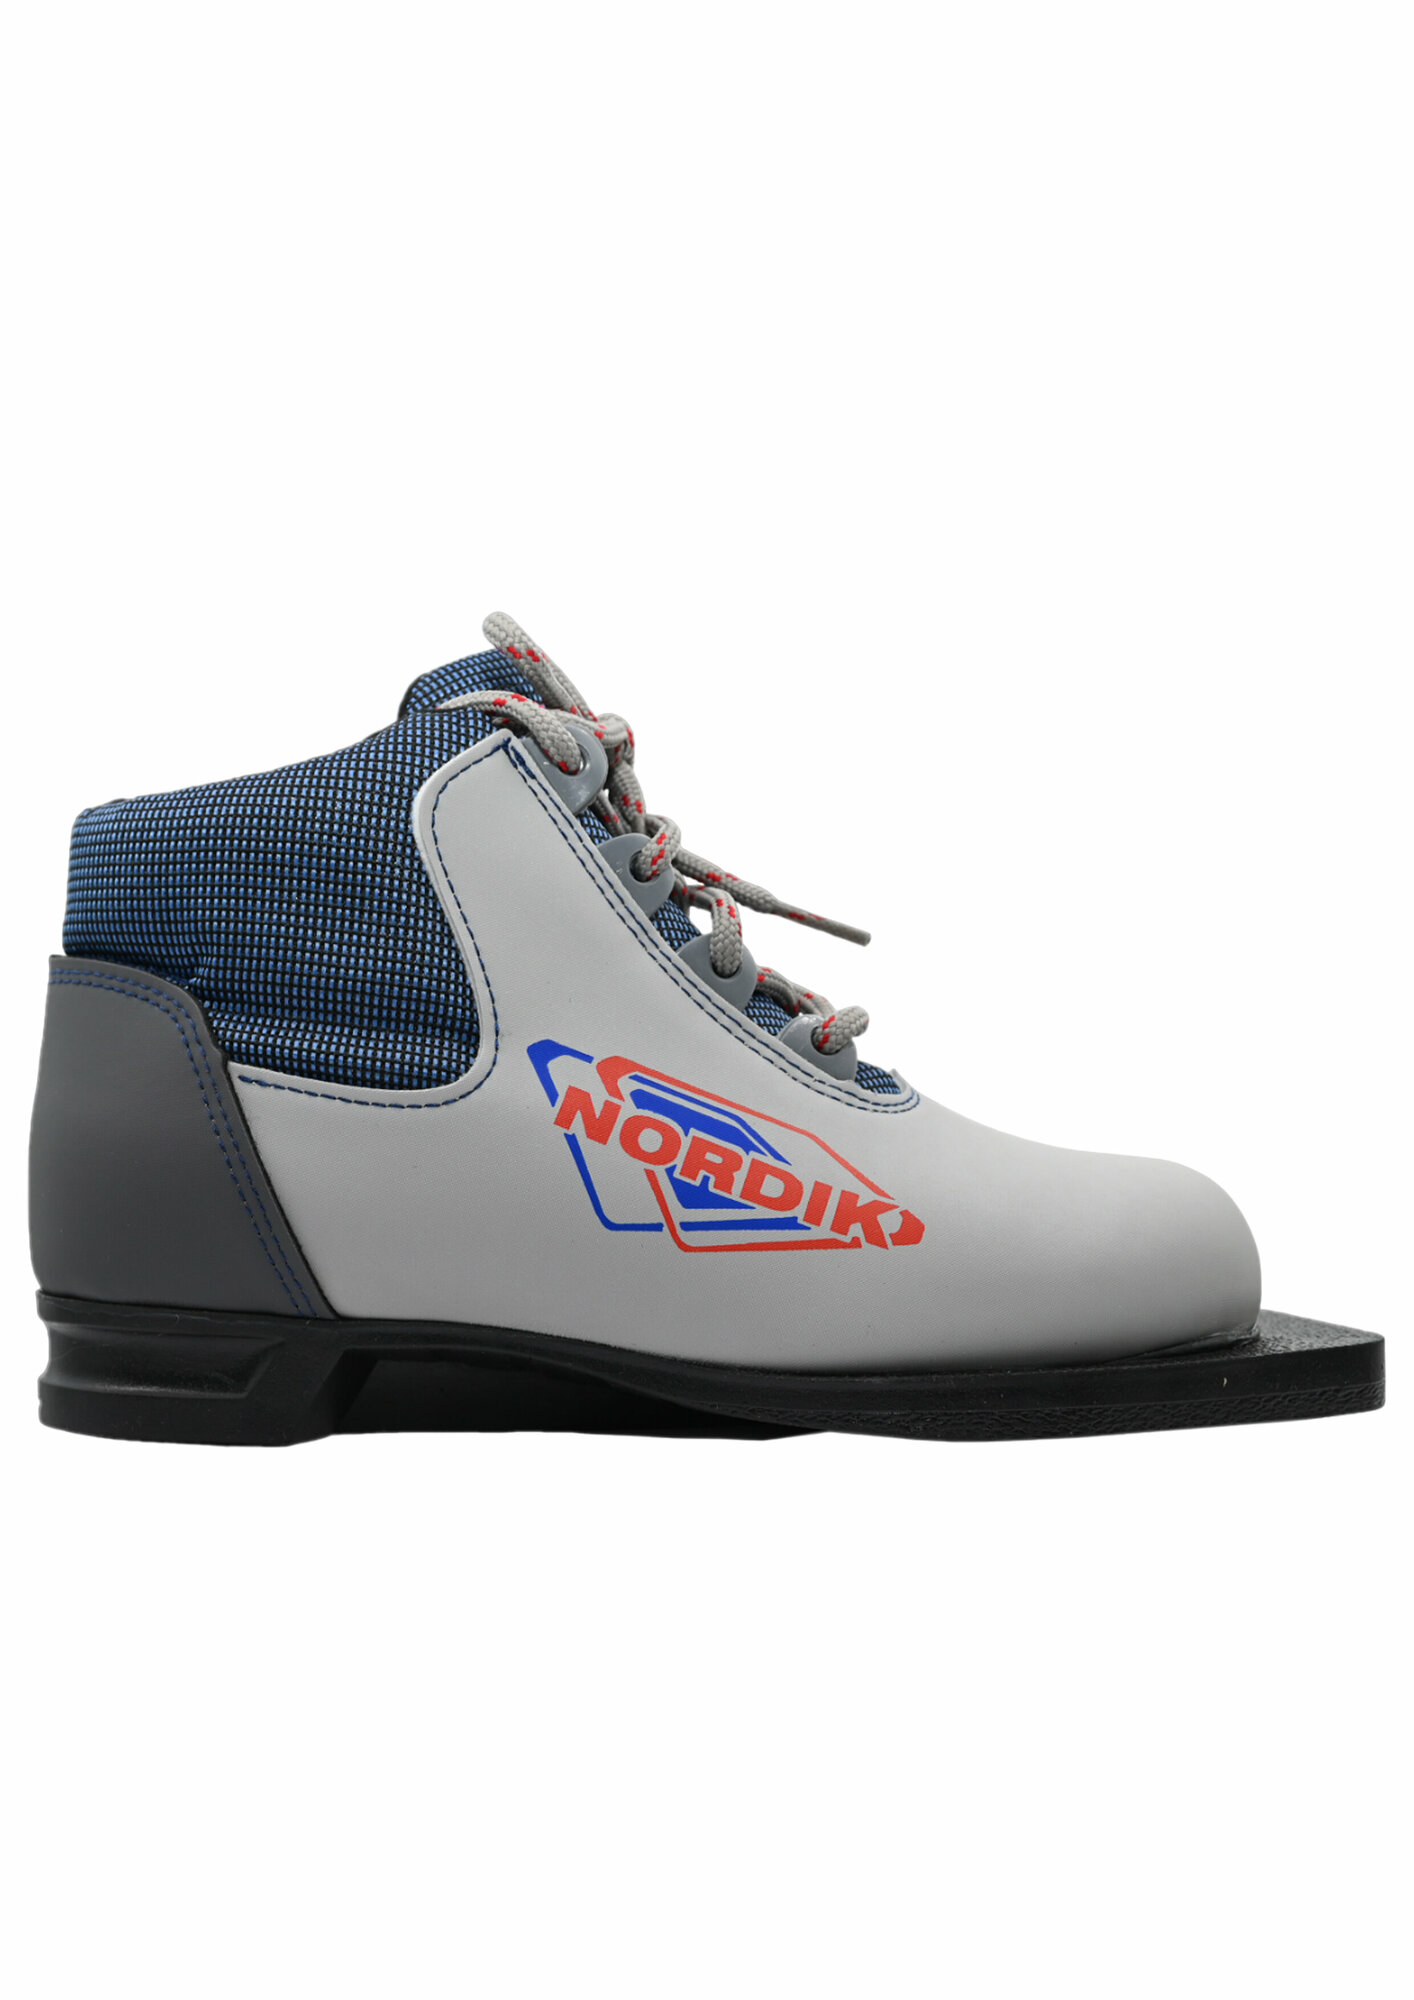 Лыжные ботинки NN75 детские мм NORDIK (синтетика) 34 размер